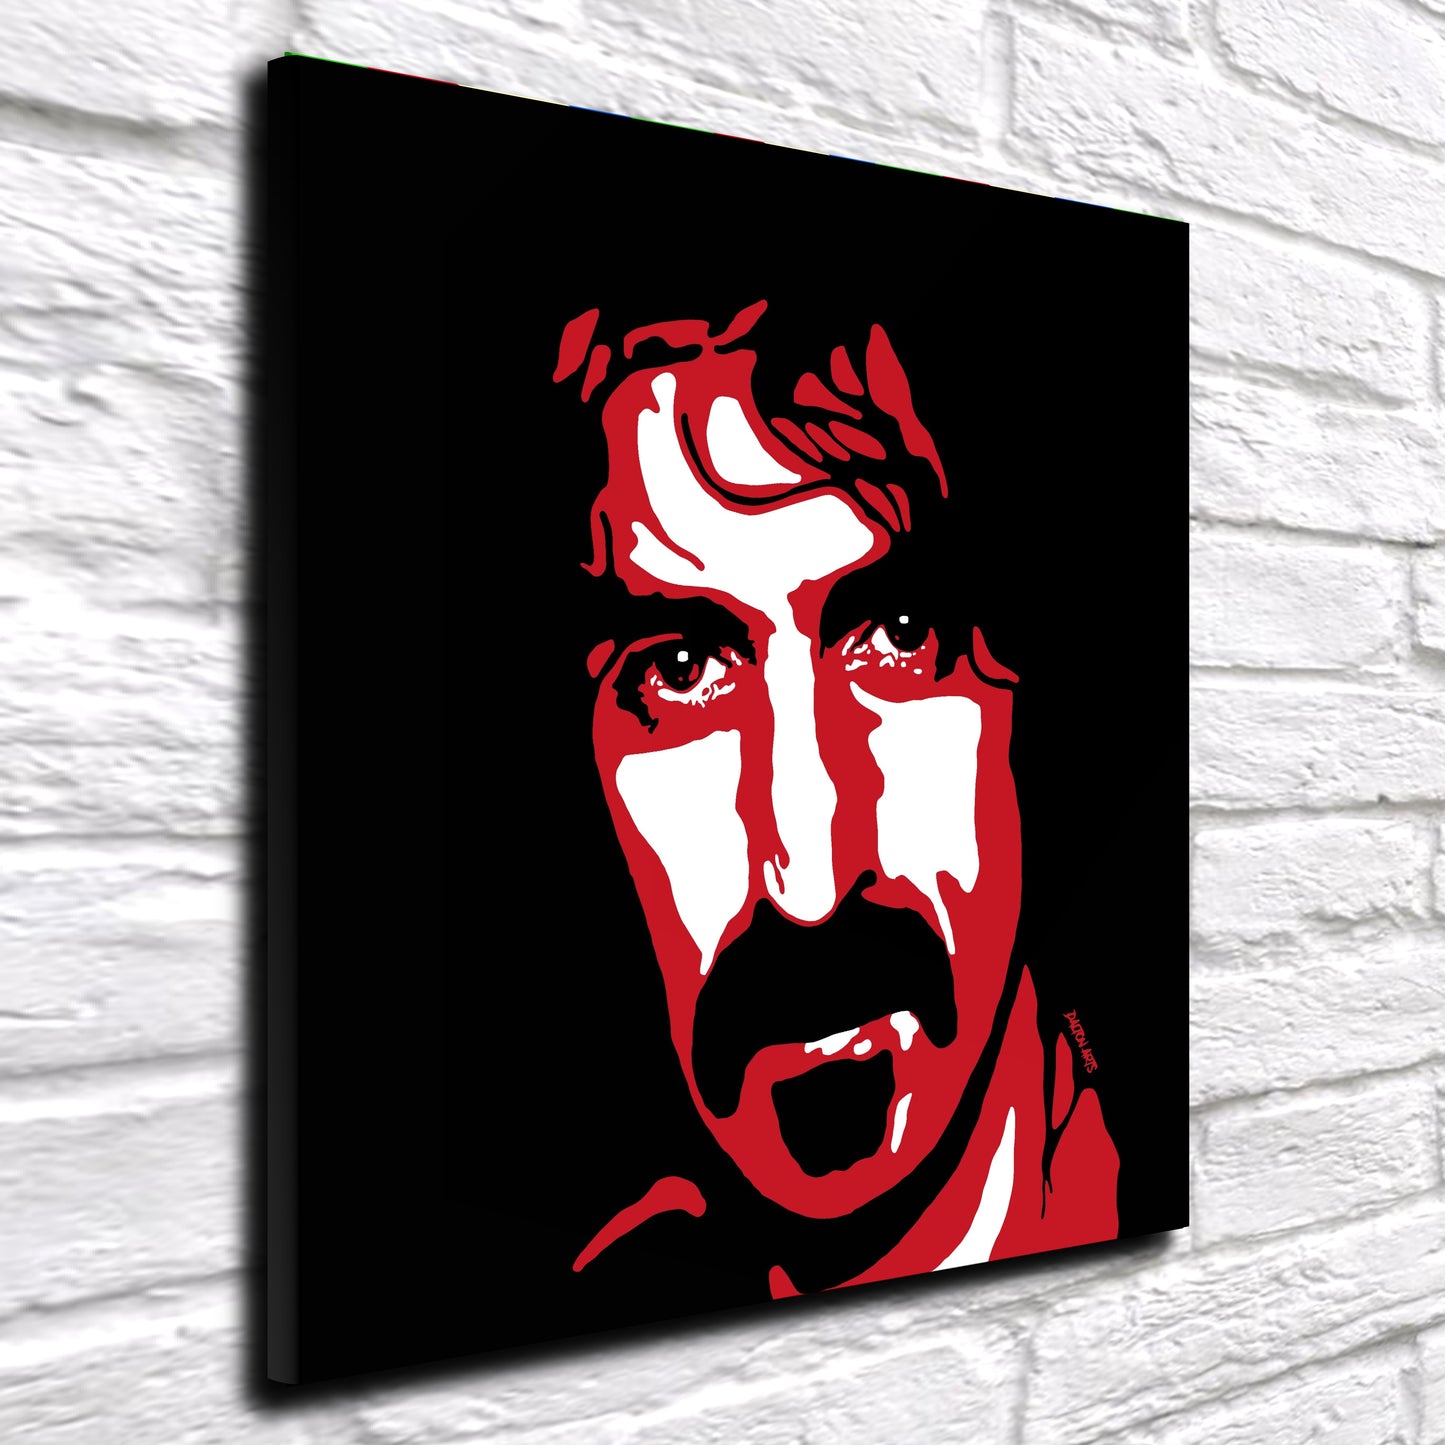 Frank Zappa Pop Art